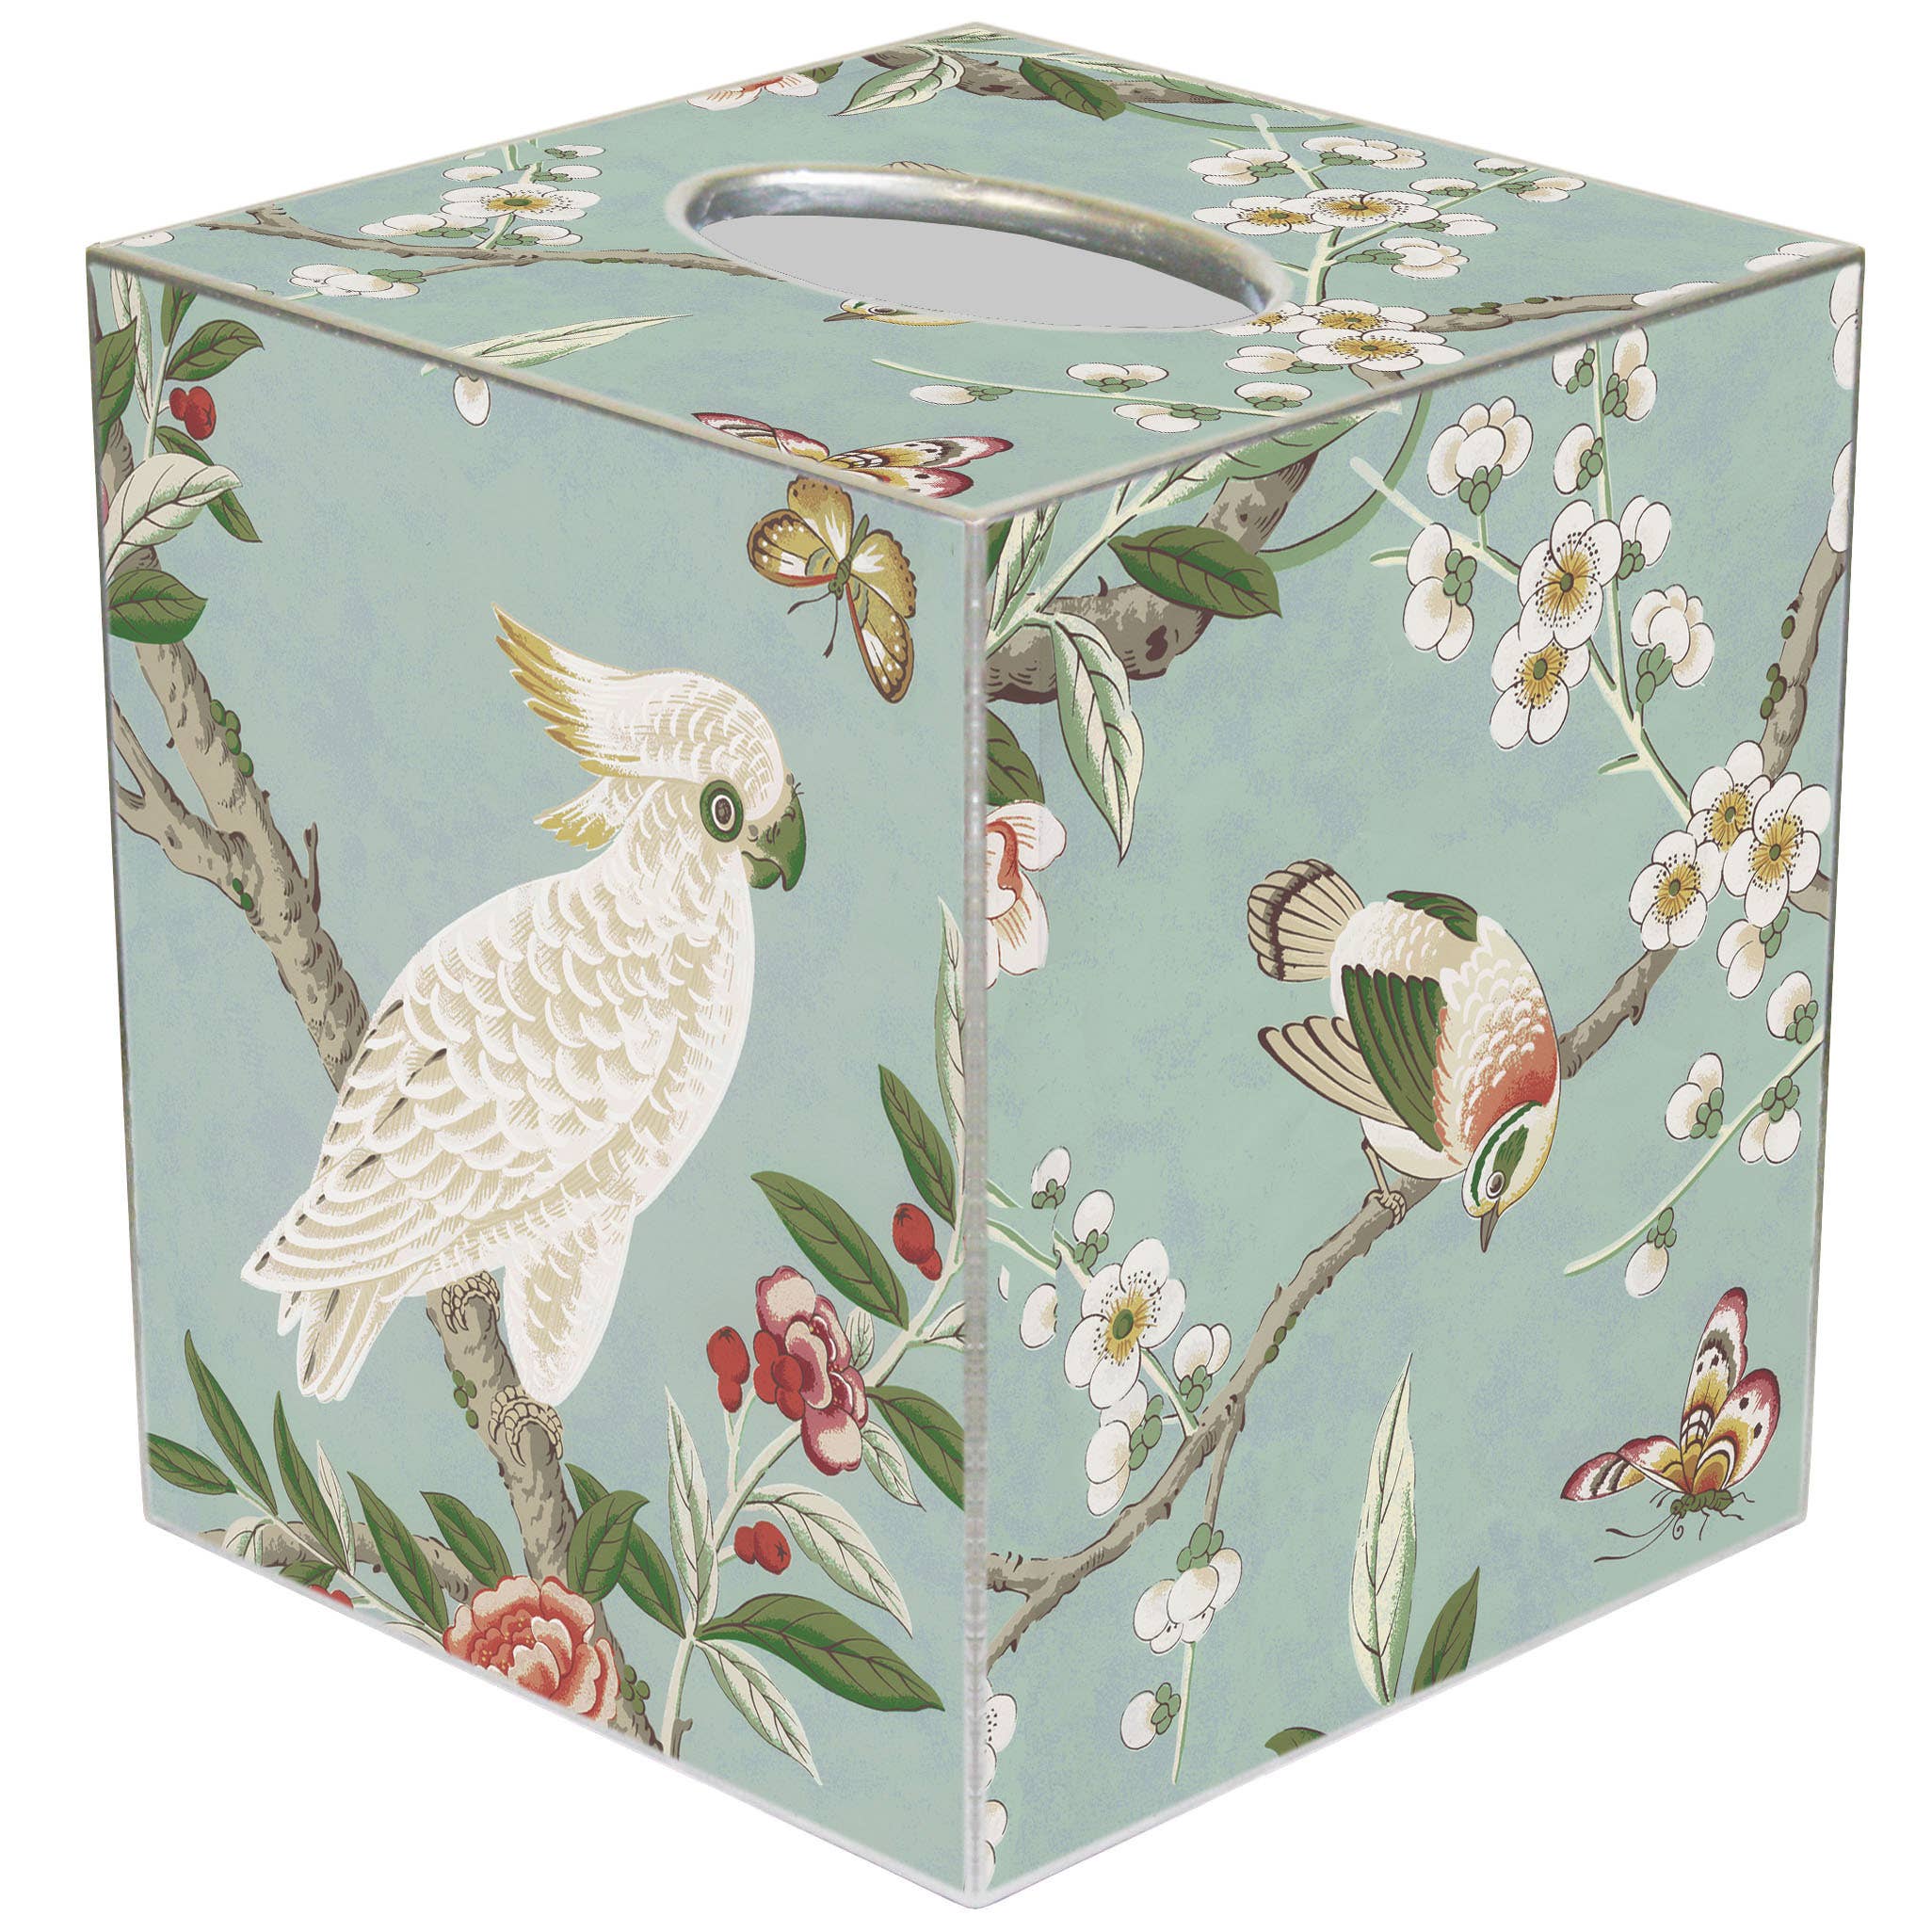 Birds & Bloom Paper Mache Tissue Box Cover front blue | MILK MONEY milkmoney.co | white elephant gift ideas, gift, mother's day gift ideas, white elephant gift, gift shops near me